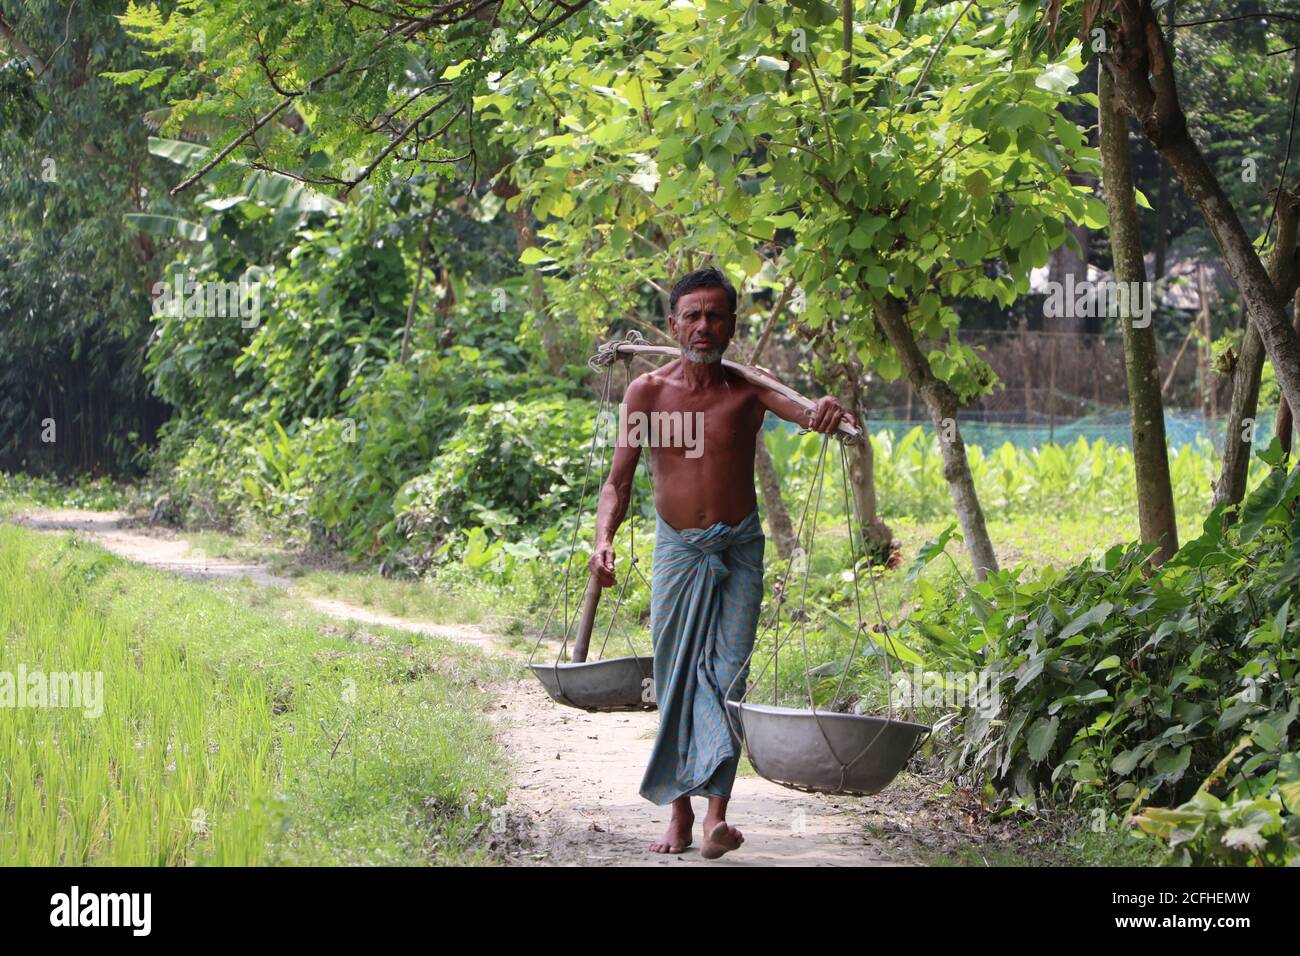 Agricoltore asiatico che trasporta attrezzi agricoli (vanga, ciotole) per lavorare nel terreno agricolo più vicino nella zona rurale di Bogura, Bangladesh Foto Stock